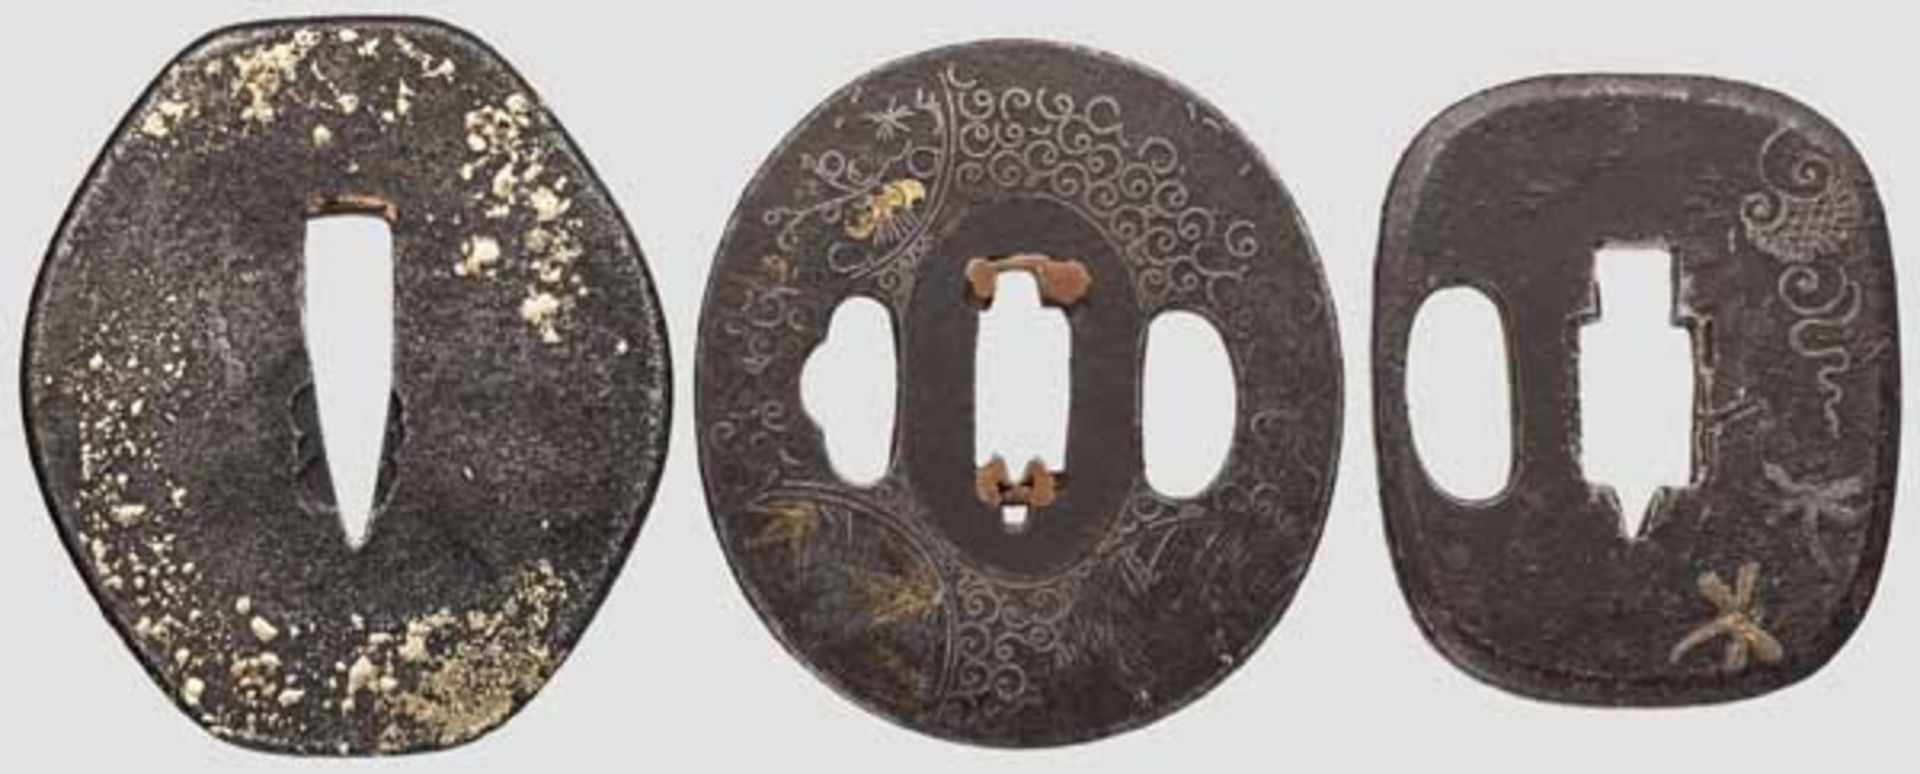 Drei Tsubas, Japan um 1750 Hijigata-Eisentsuba mit Messingdekor auf glatter, etwas korrodierter